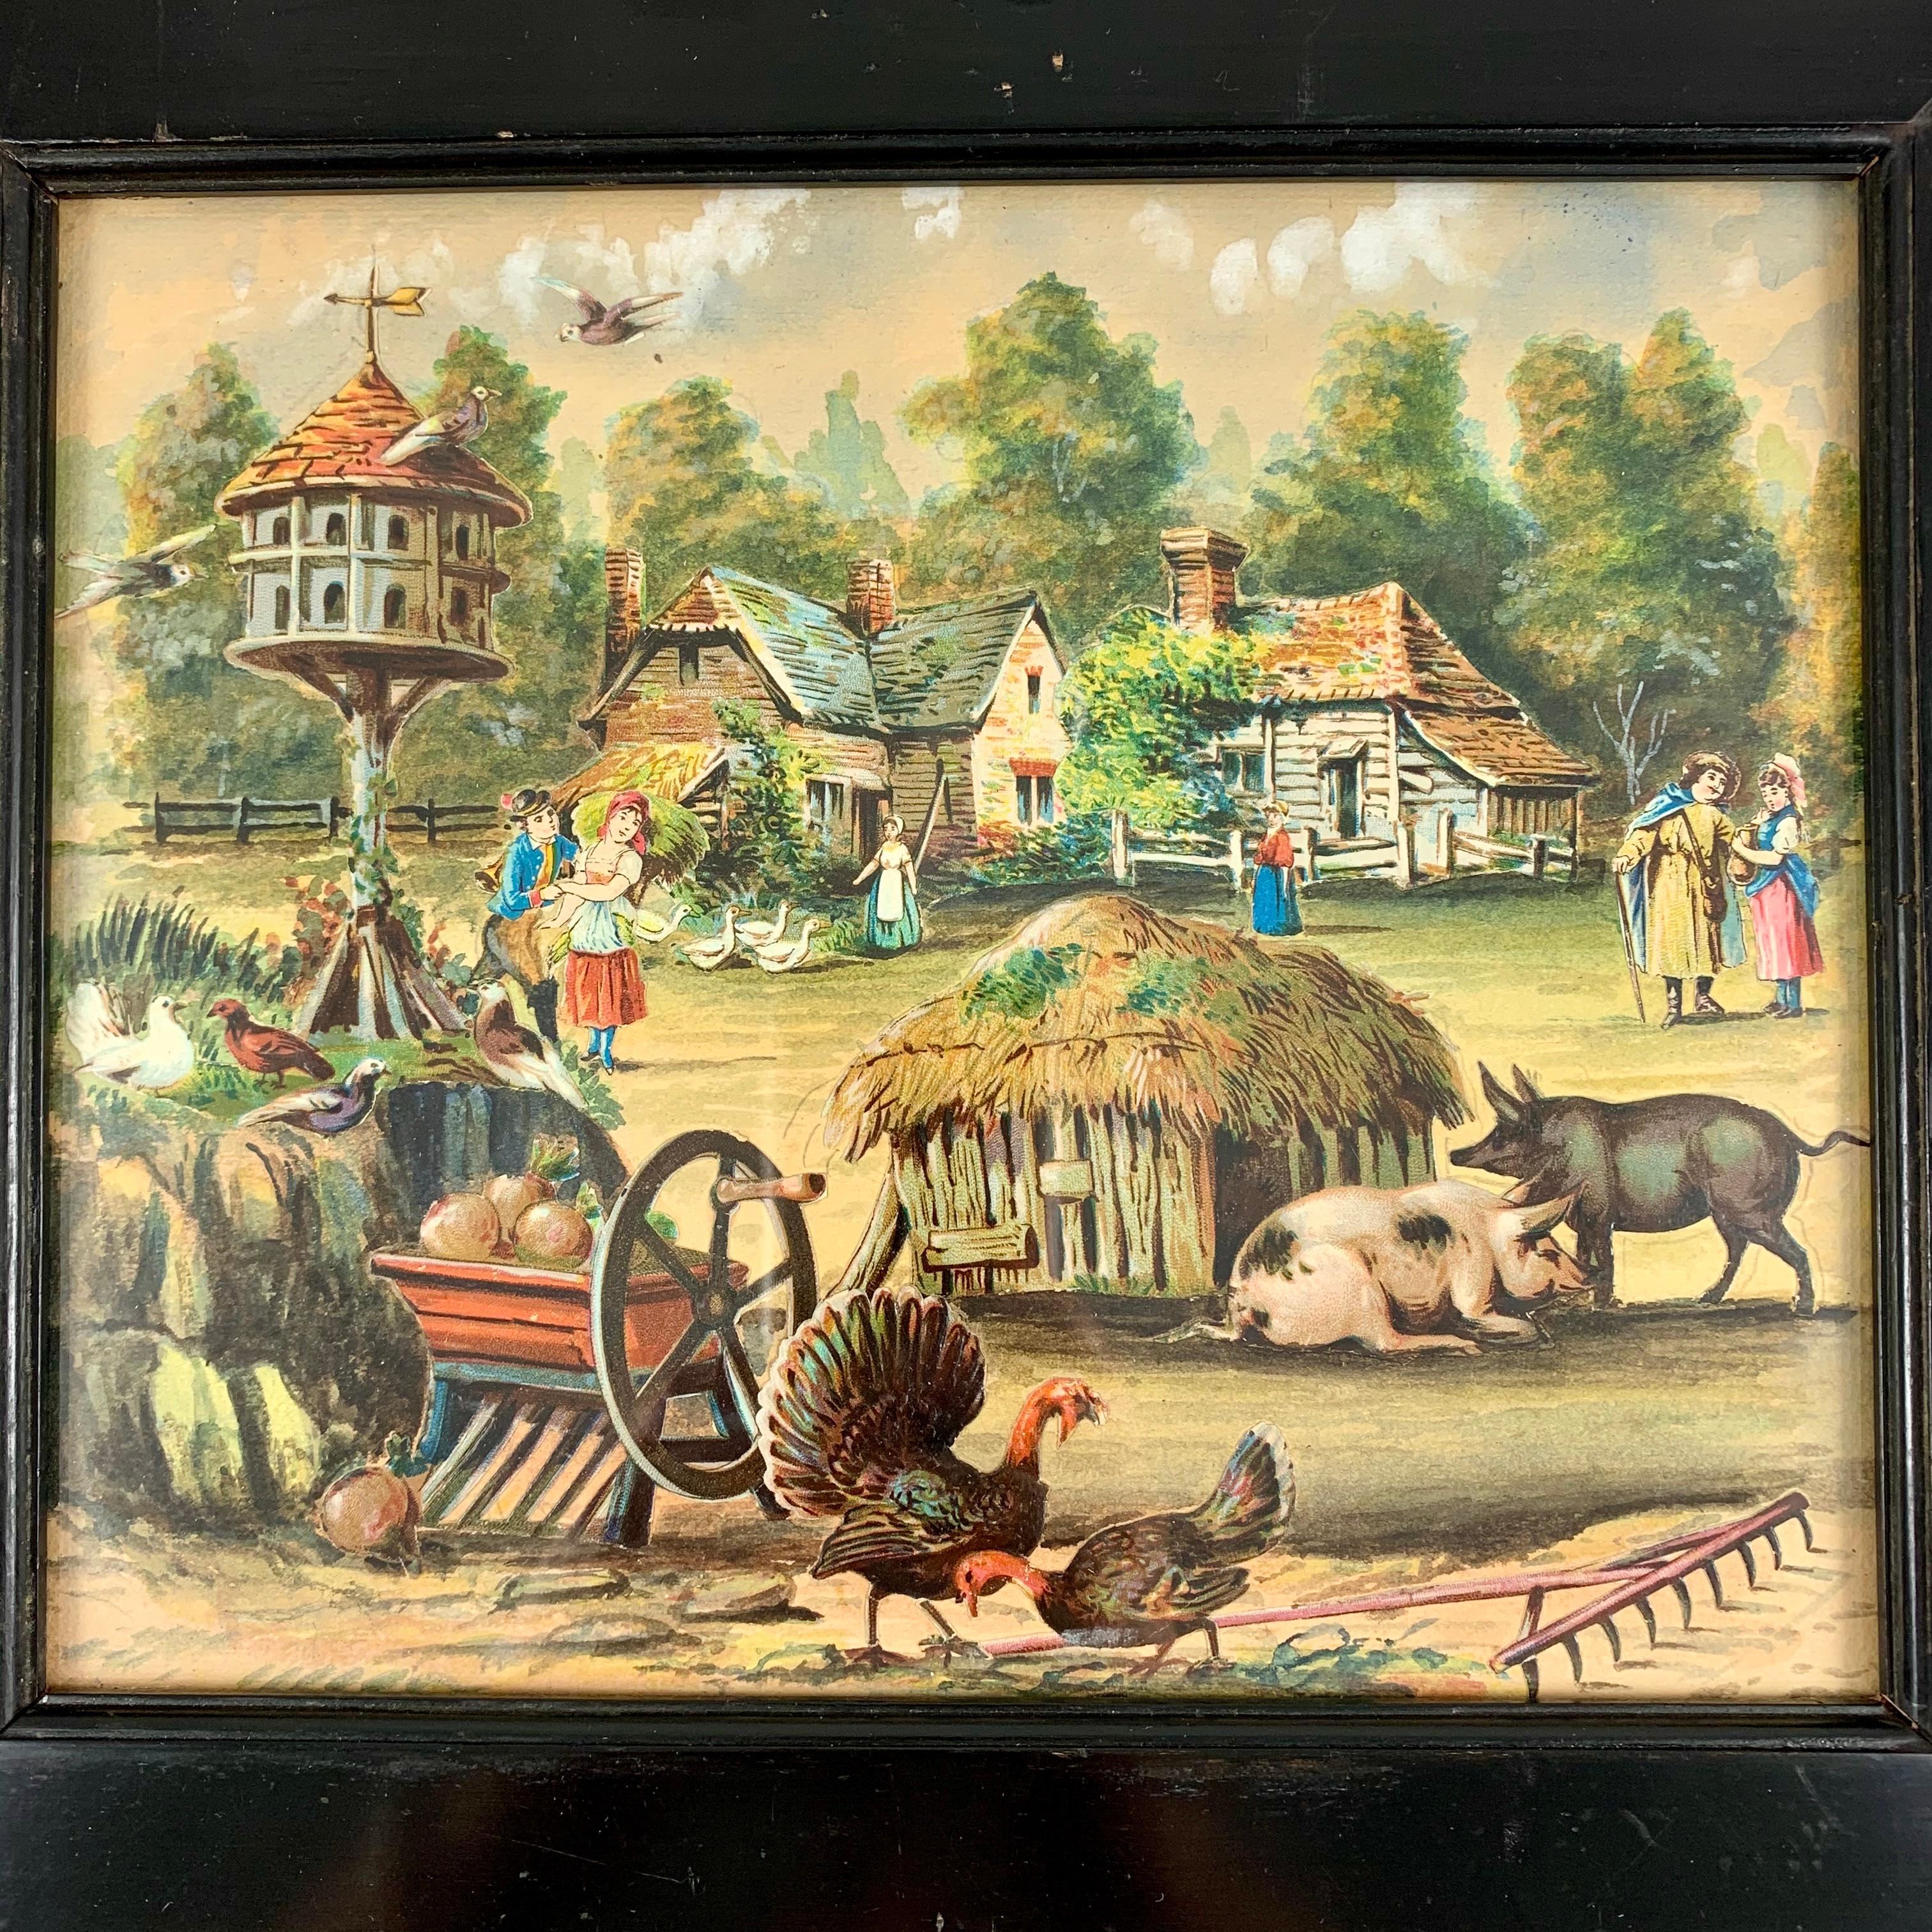 Ein Original British School Decalomania dekorative Kunst Aquarell und schneiden Papier Bauernhof Szene in einem schweren schwarzen Holzrahmen montiert, um 1860.

Diese wurden vor allem von jungen Mädchen aus englischen Adelsfamilien in der späten